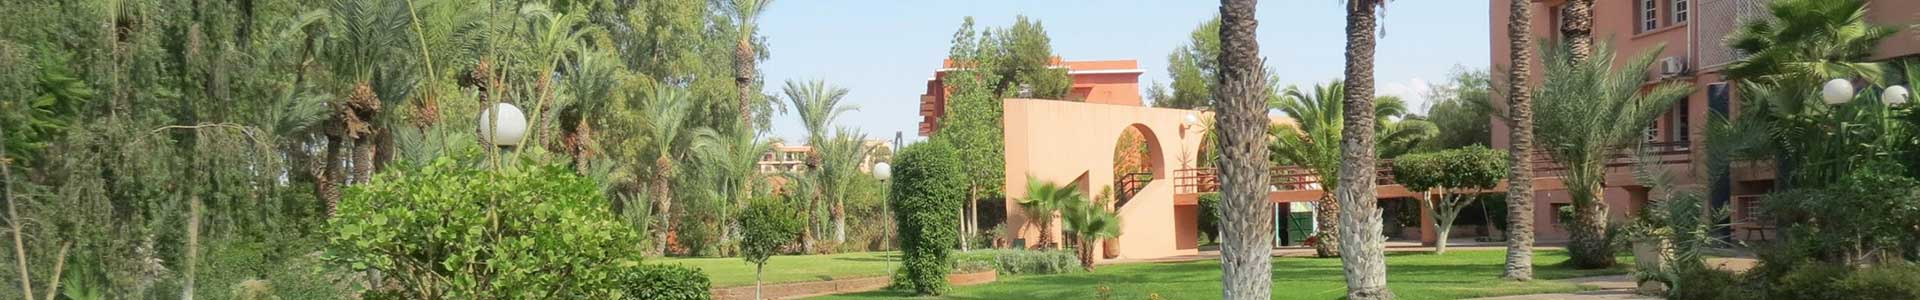 Institut Français de Marrakech